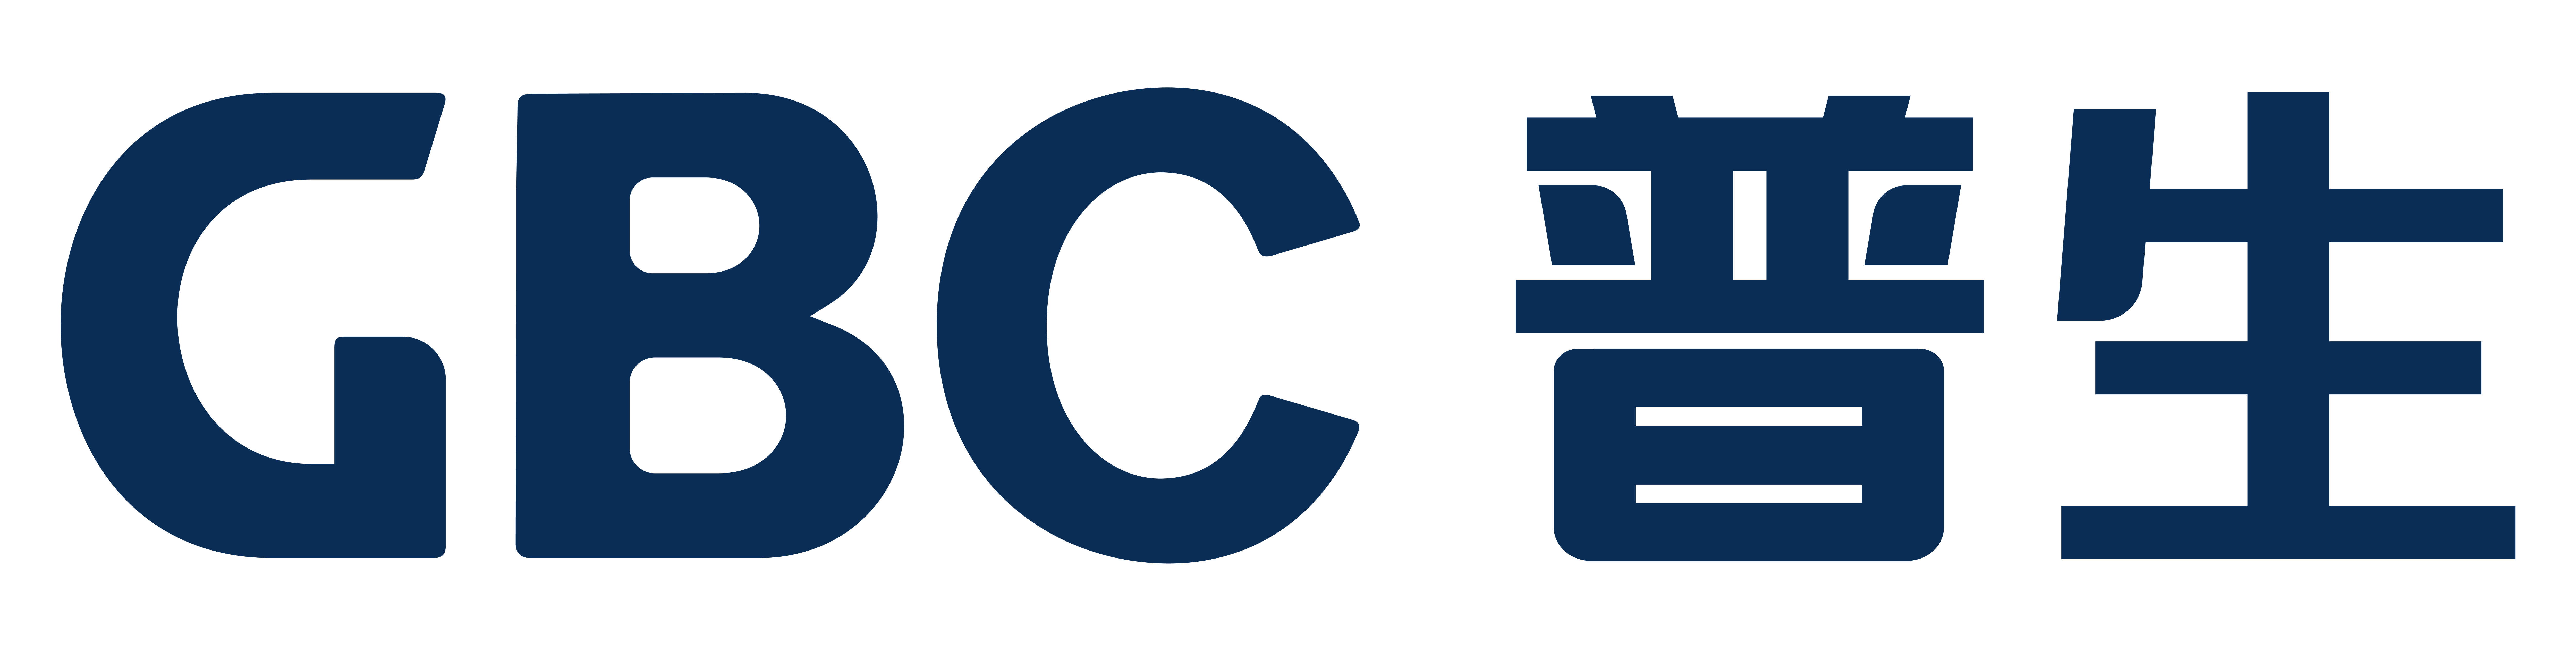 GB logo_CN.png